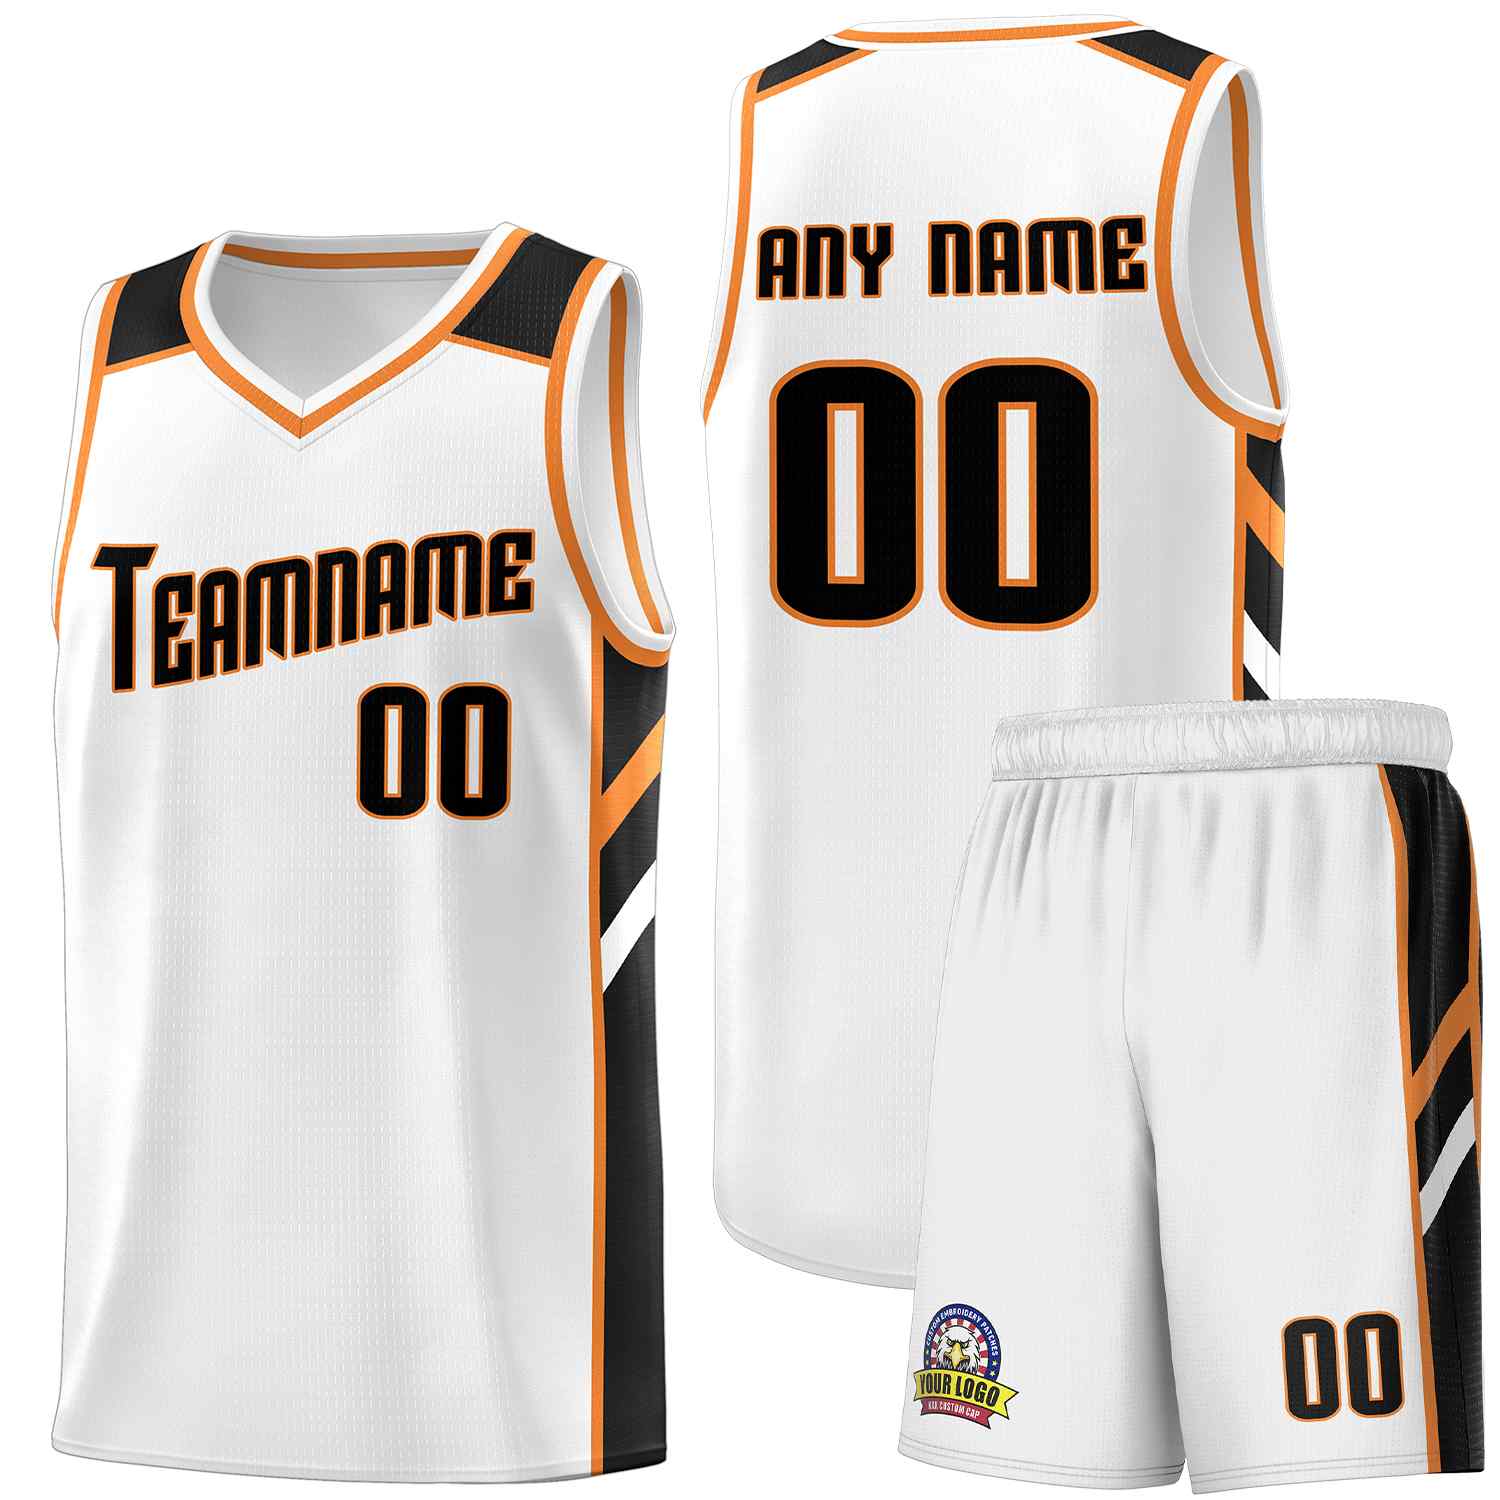 KXK Custom Orange White Double Side Sets Sportswear Basketball Jersey